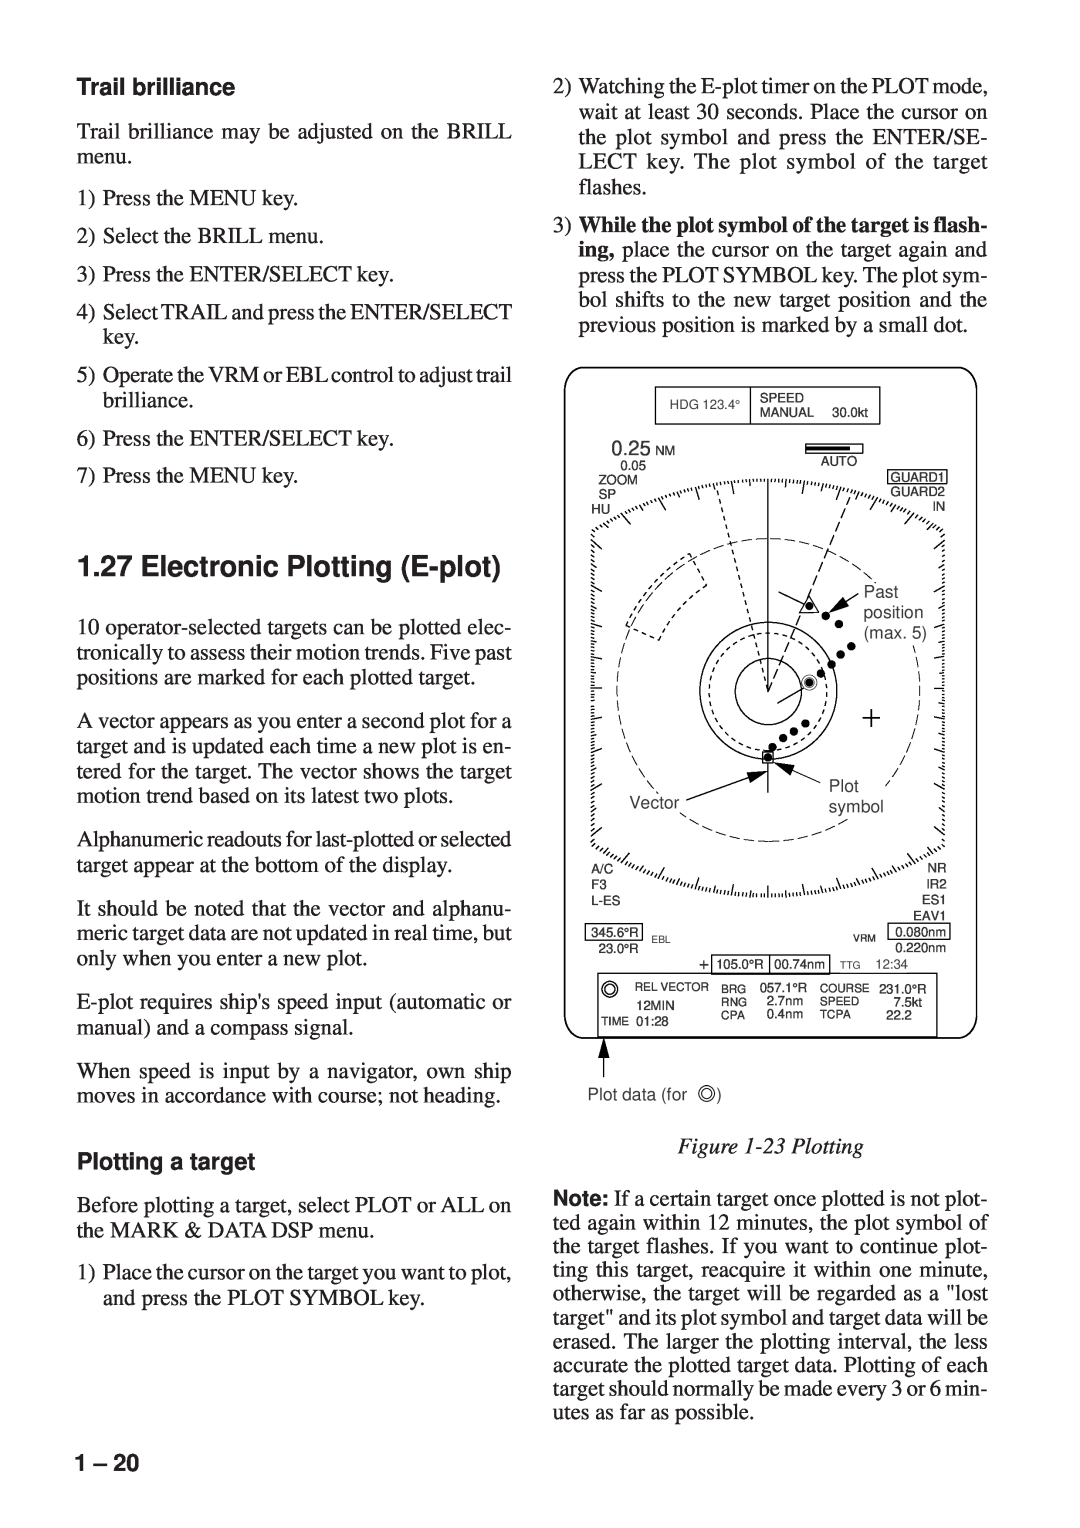 Furuno FR-8251, FR-8111 manual Electronic Plotting E-plot, Trail brilliance, Plotting a target, 23 Plotting 